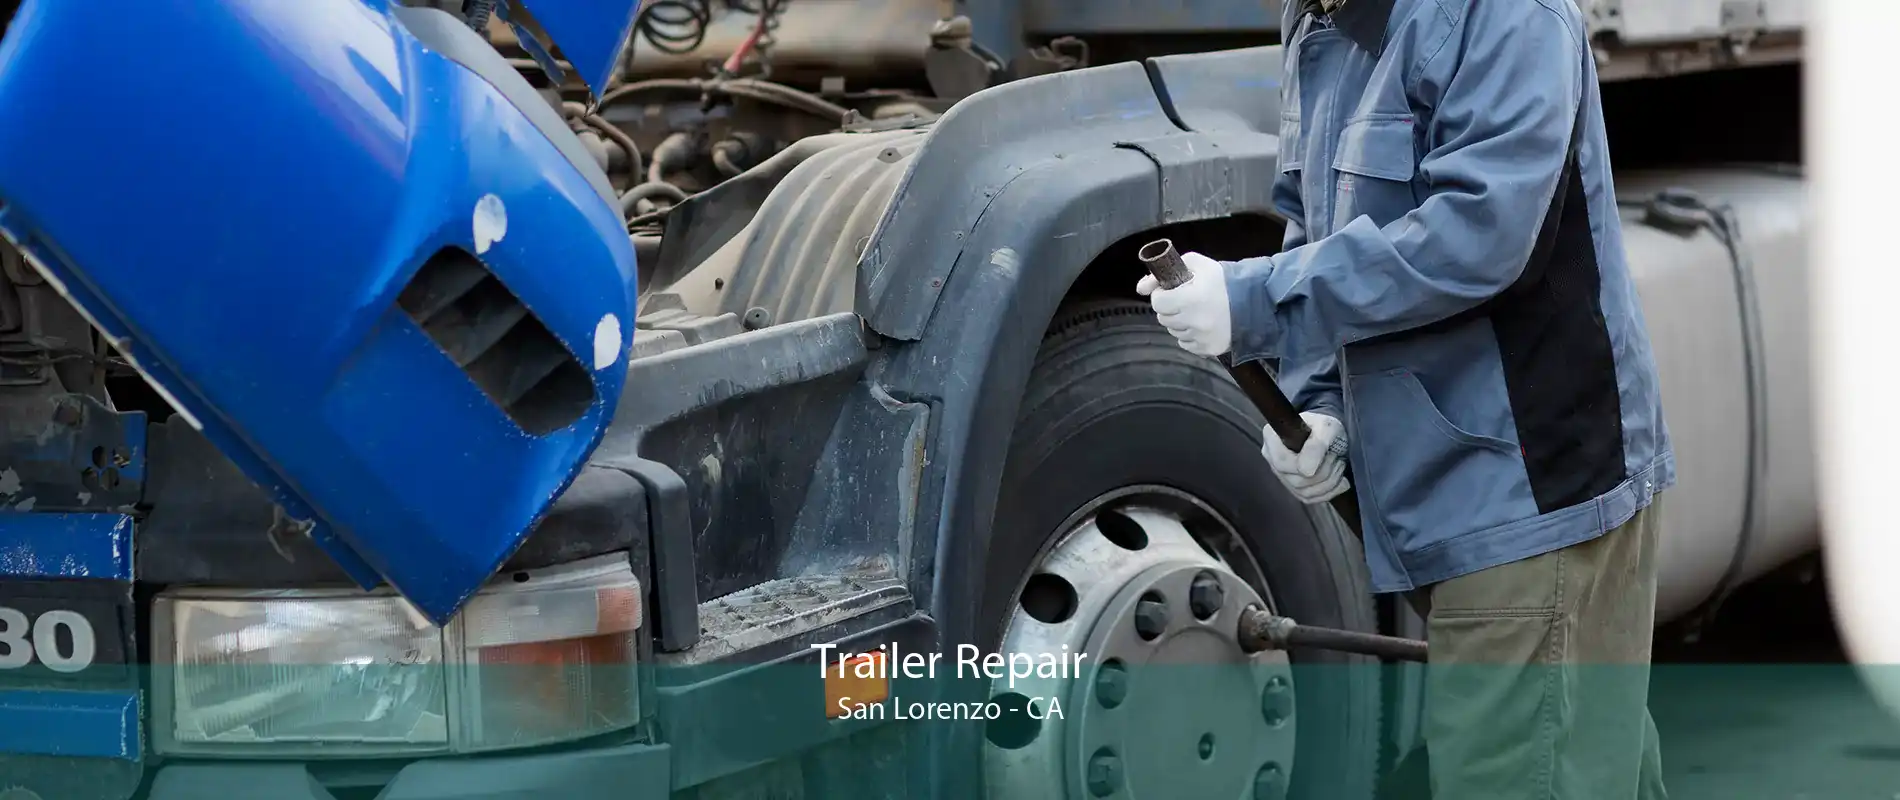 Trailer Repair San Lorenzo - CA